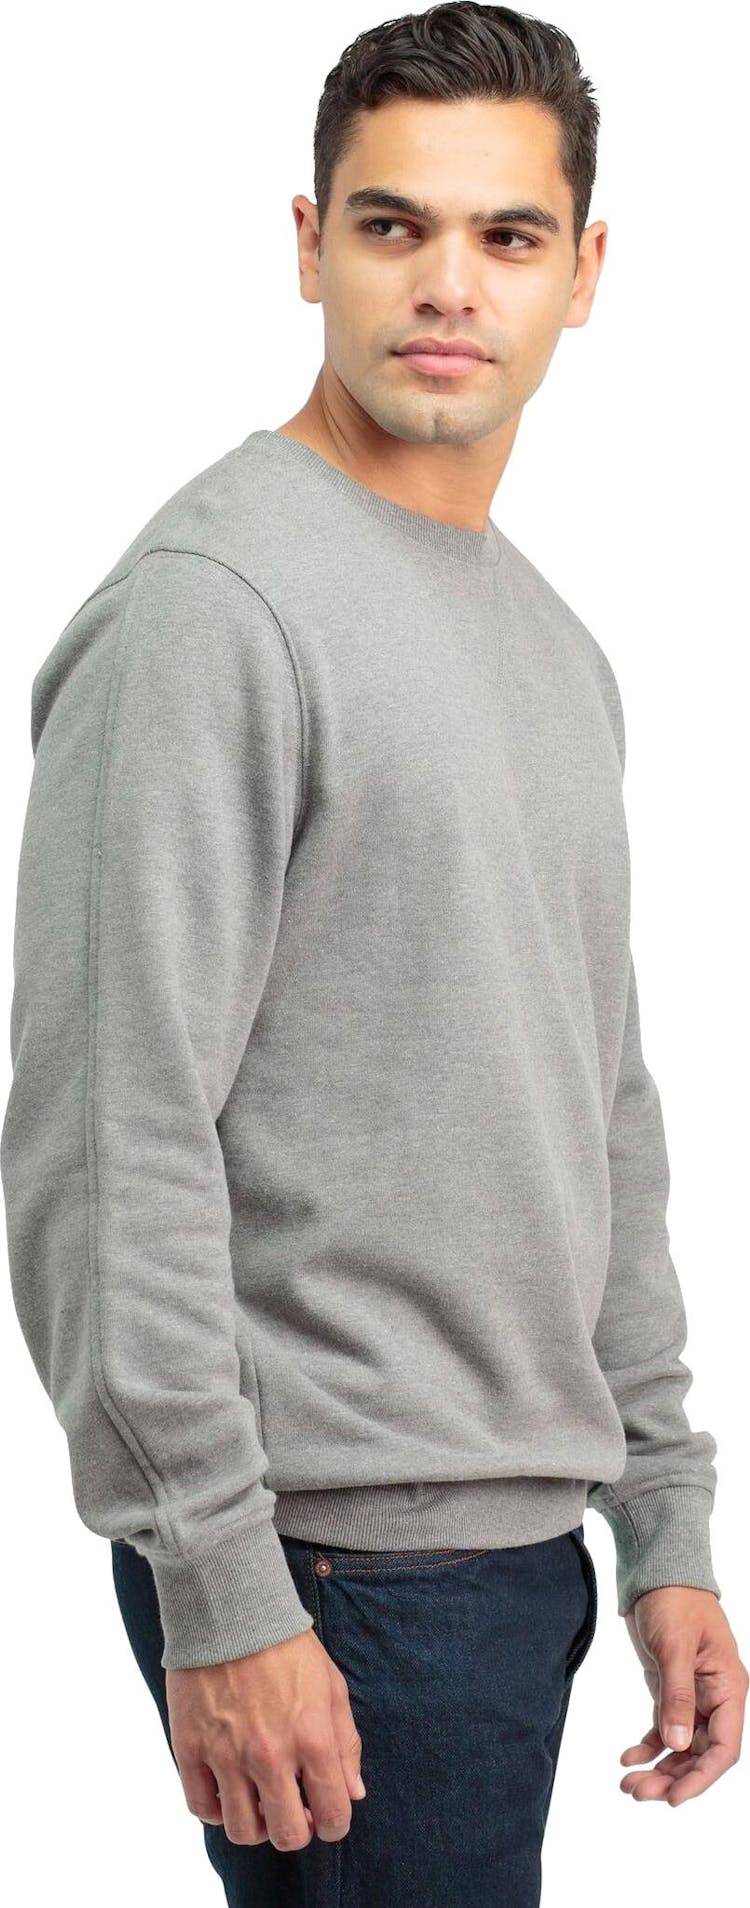 Product gallery image number 3 for product Fleece Sweatshirt - Men's